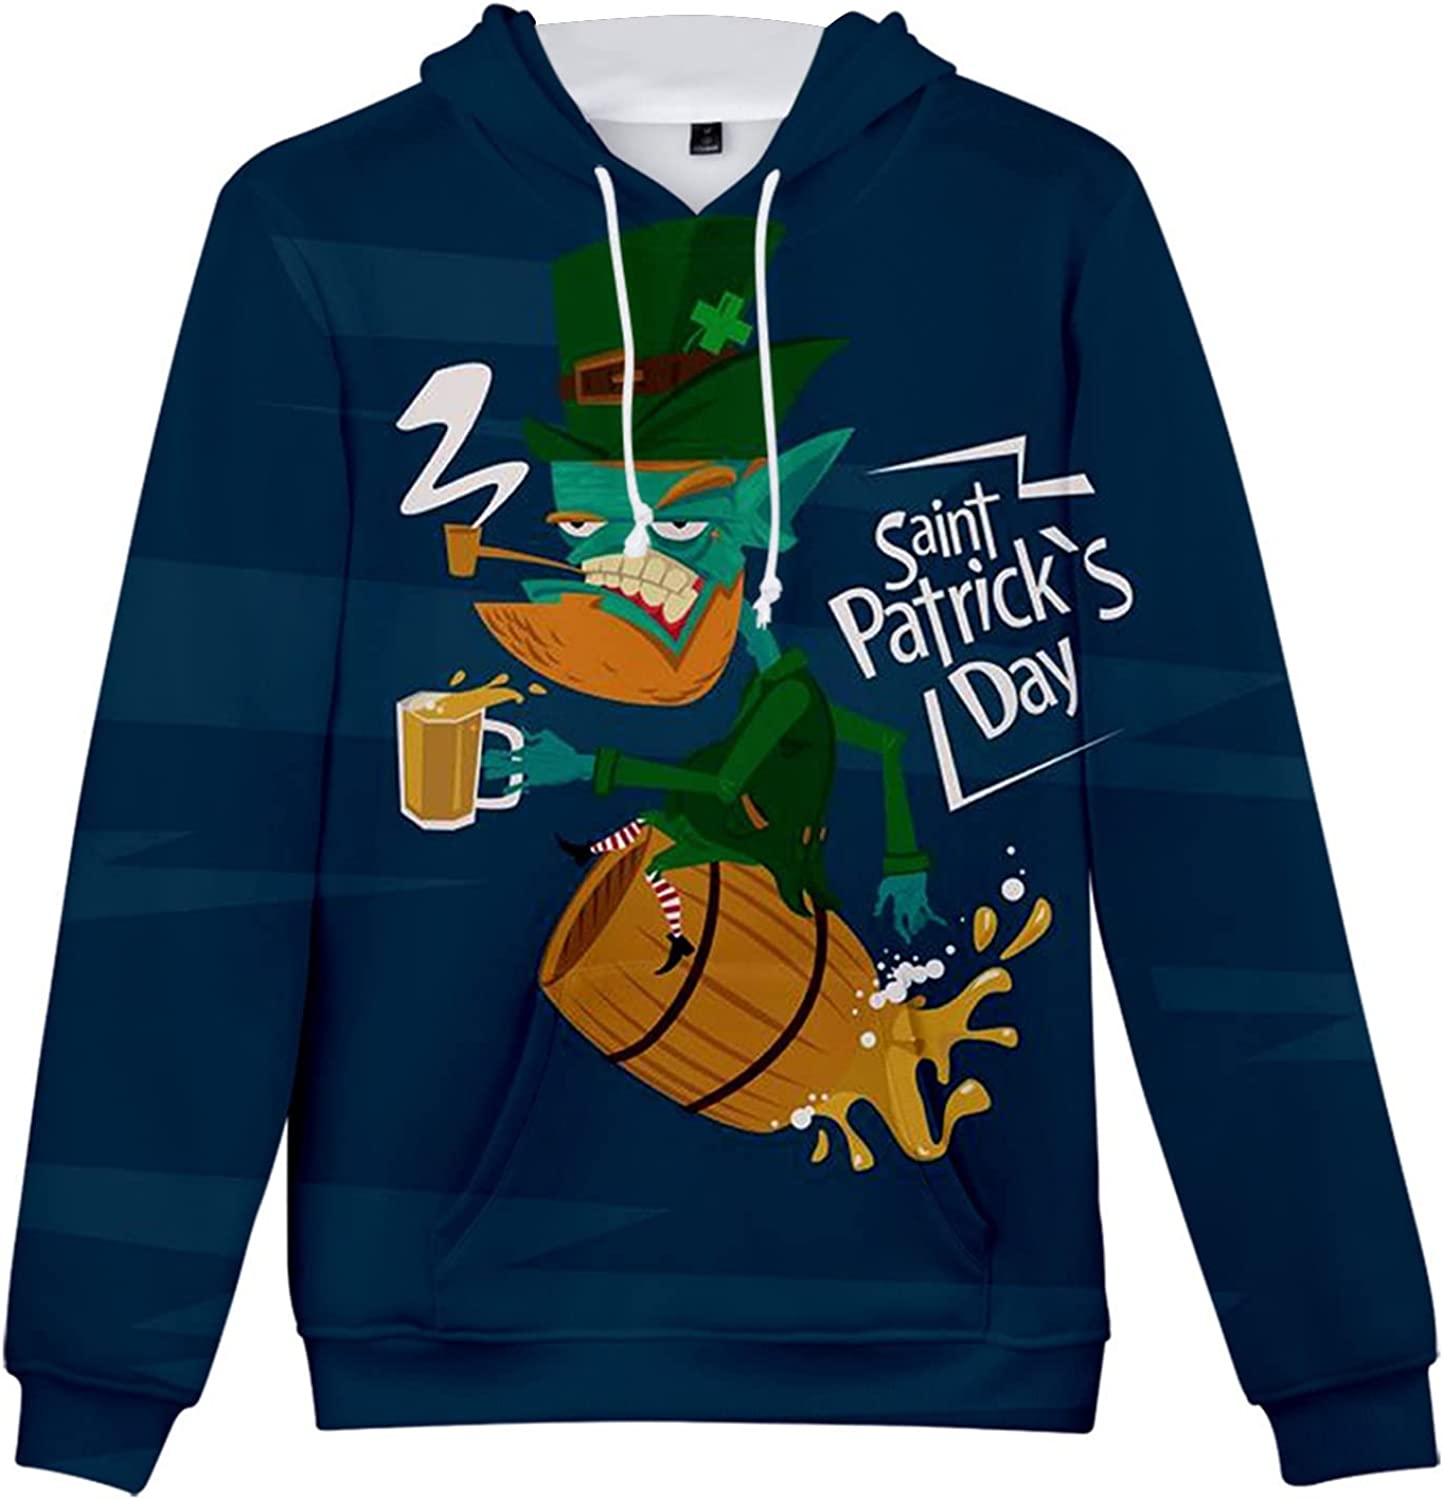 Men's St Patrick's Day custom printed hoodie